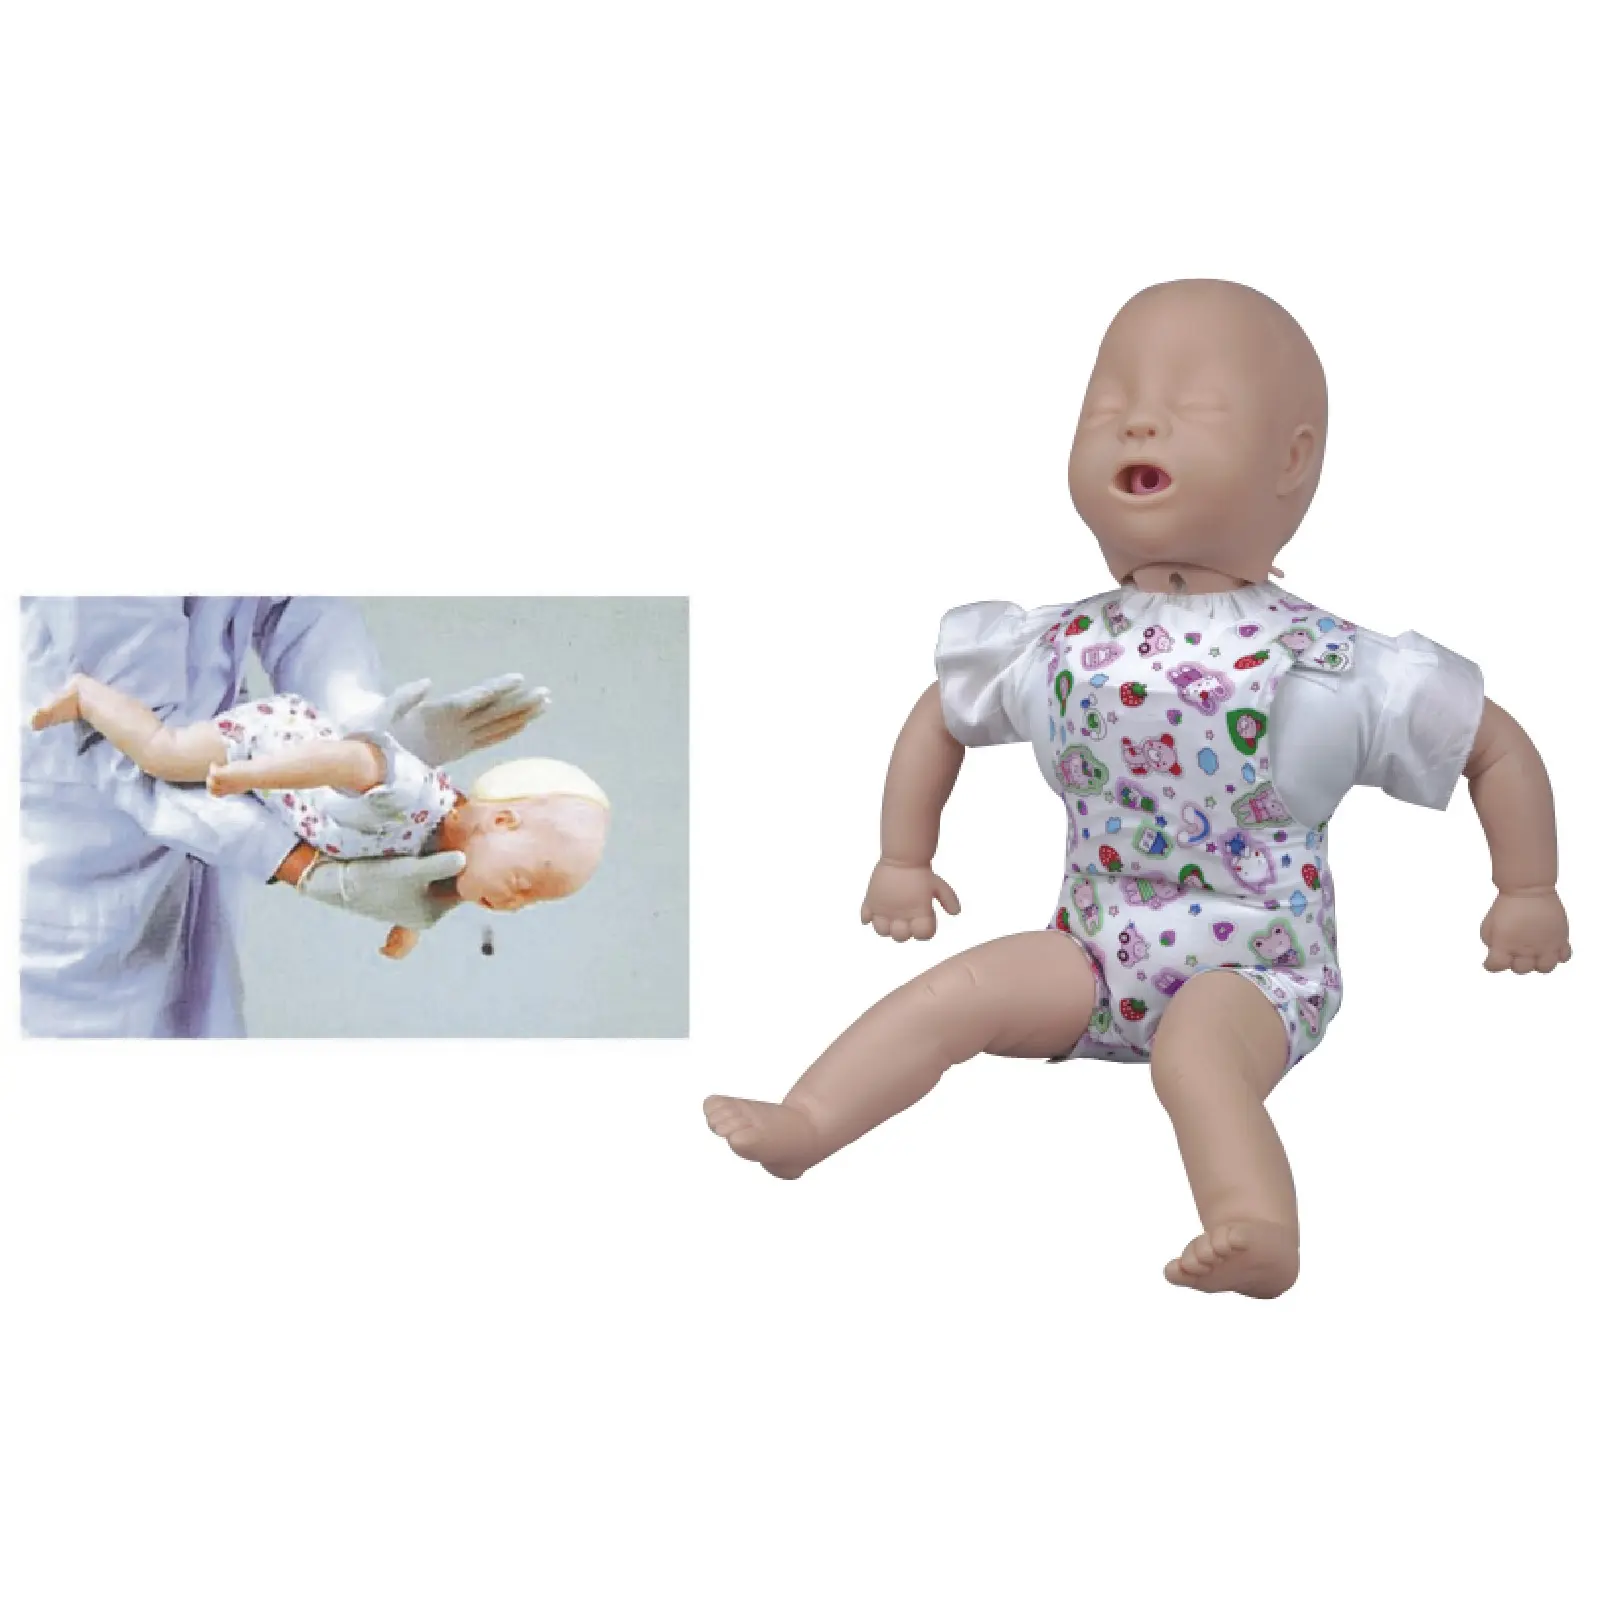 Baby First Aid Training Doll Infant CPR e modello di manichino per l'addestramento dell'ostruzione delle vie aeree